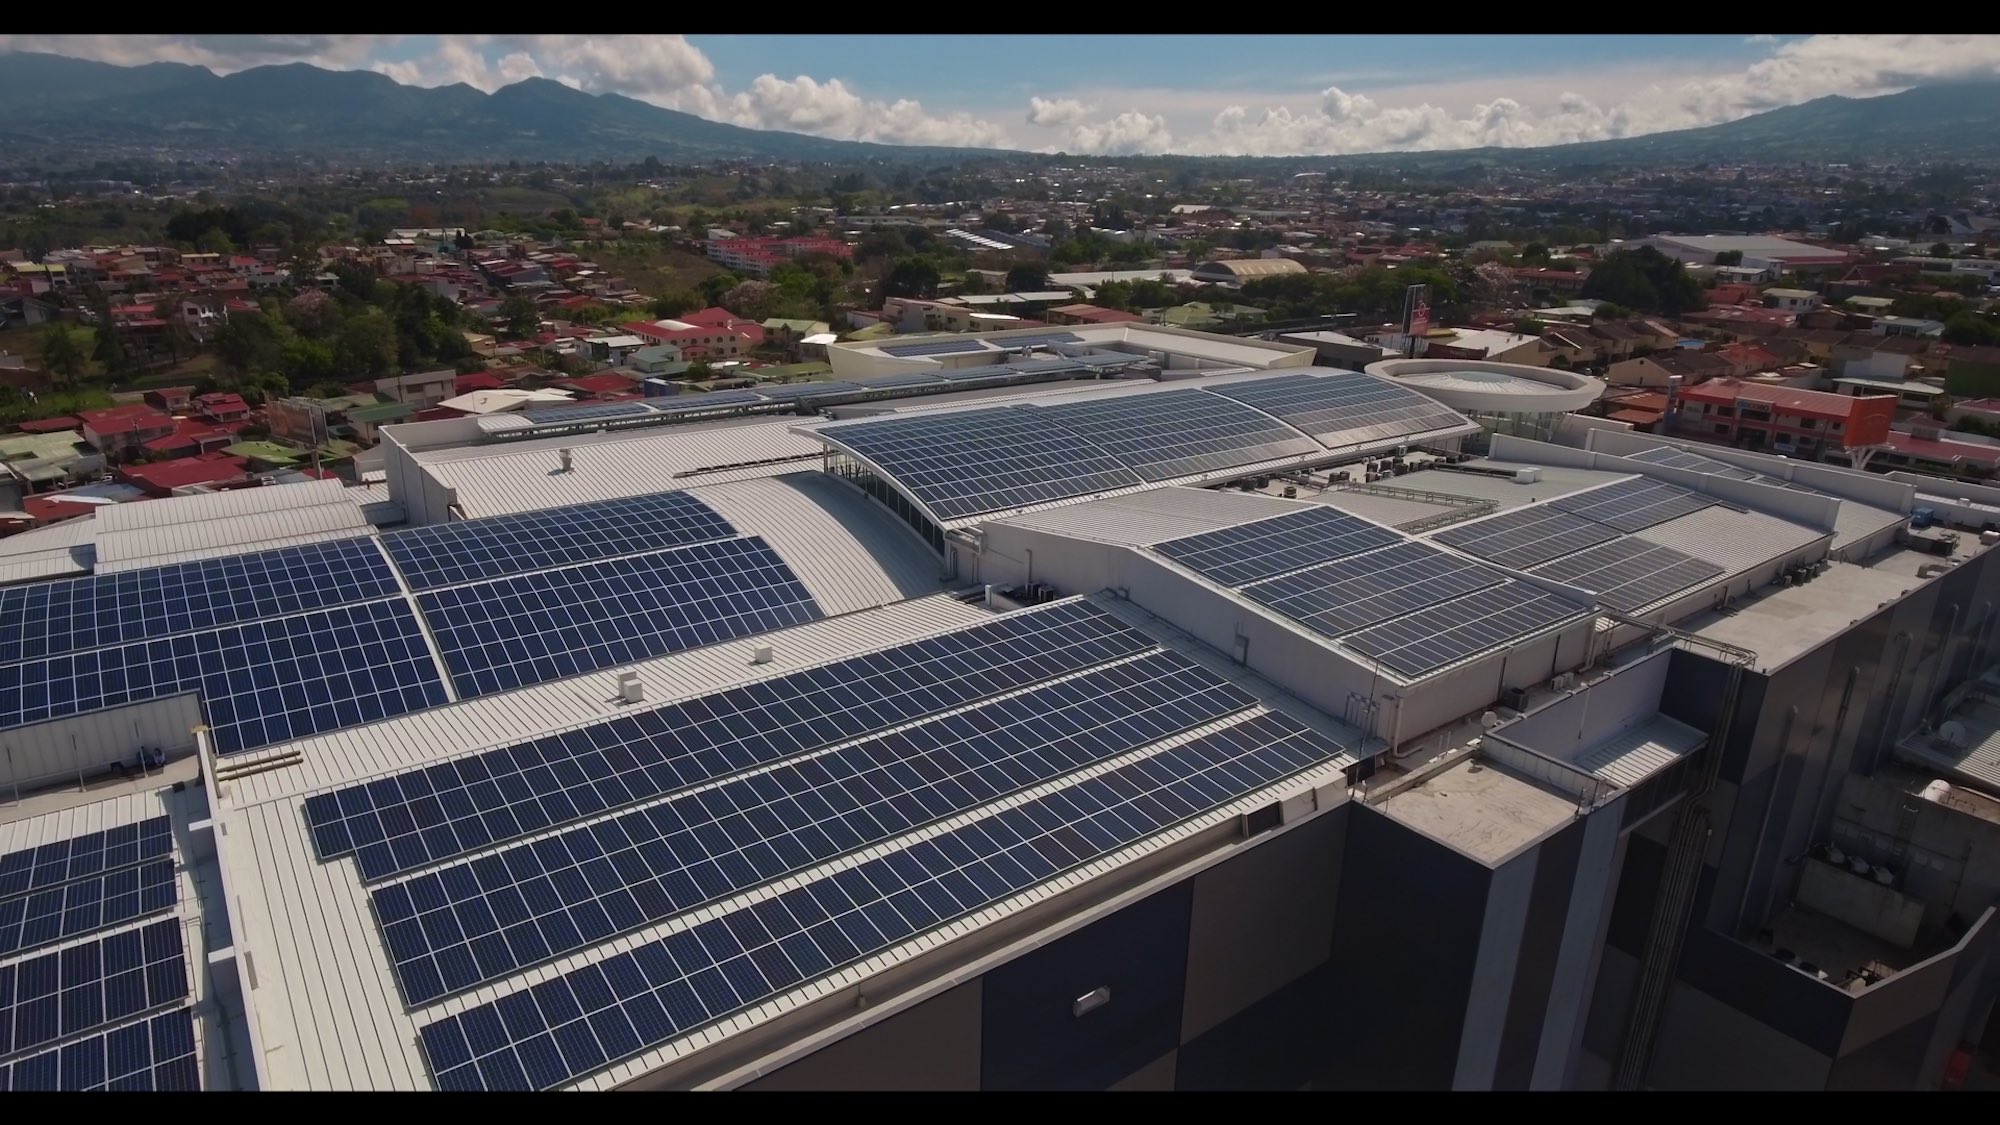 Lincoln Plaza tiene el sistema de generación solar más grande de Costa Rica en un solo techo.